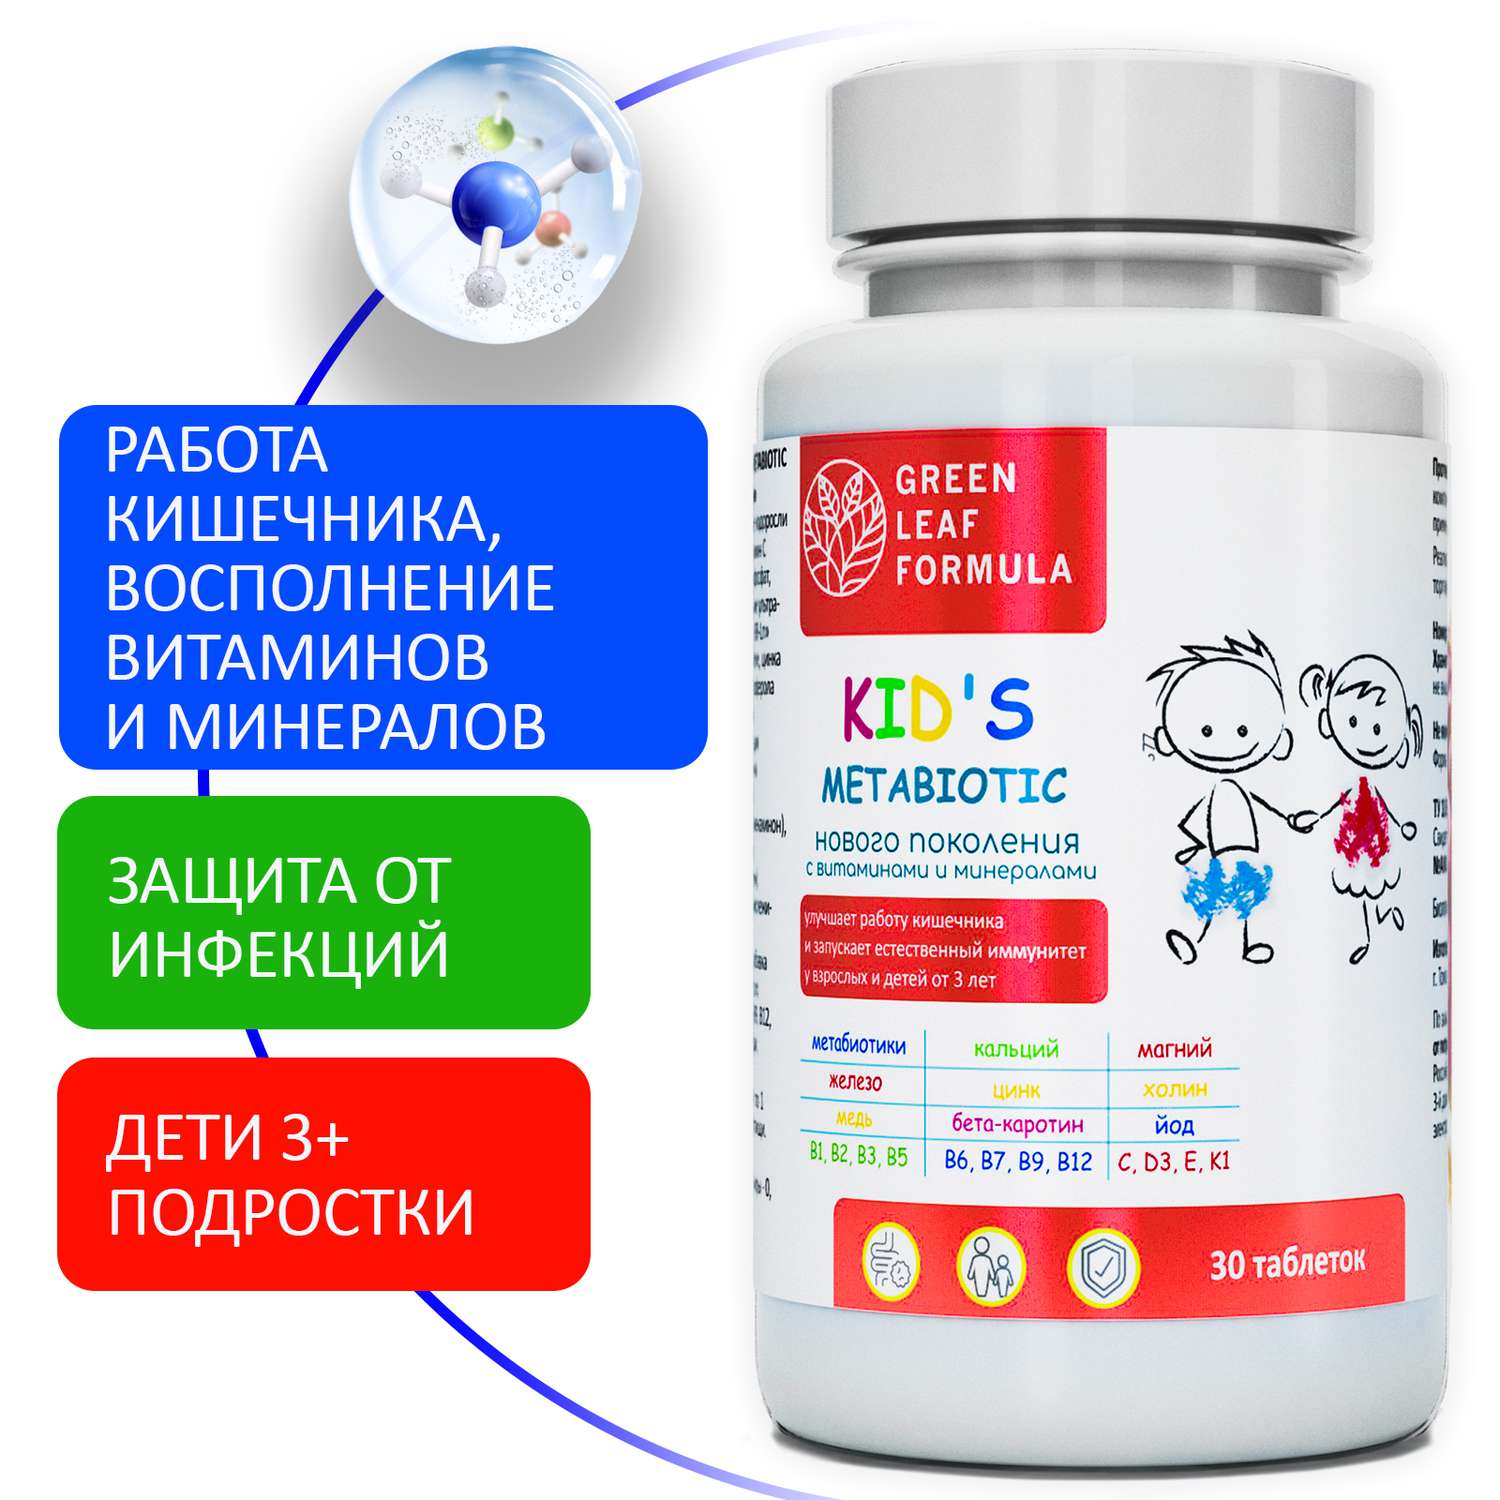 Детская омега 3 и метабиотики Green Leaf Formula для кишечника витаминный комплекс для иммунитета 120 шт - фото 9